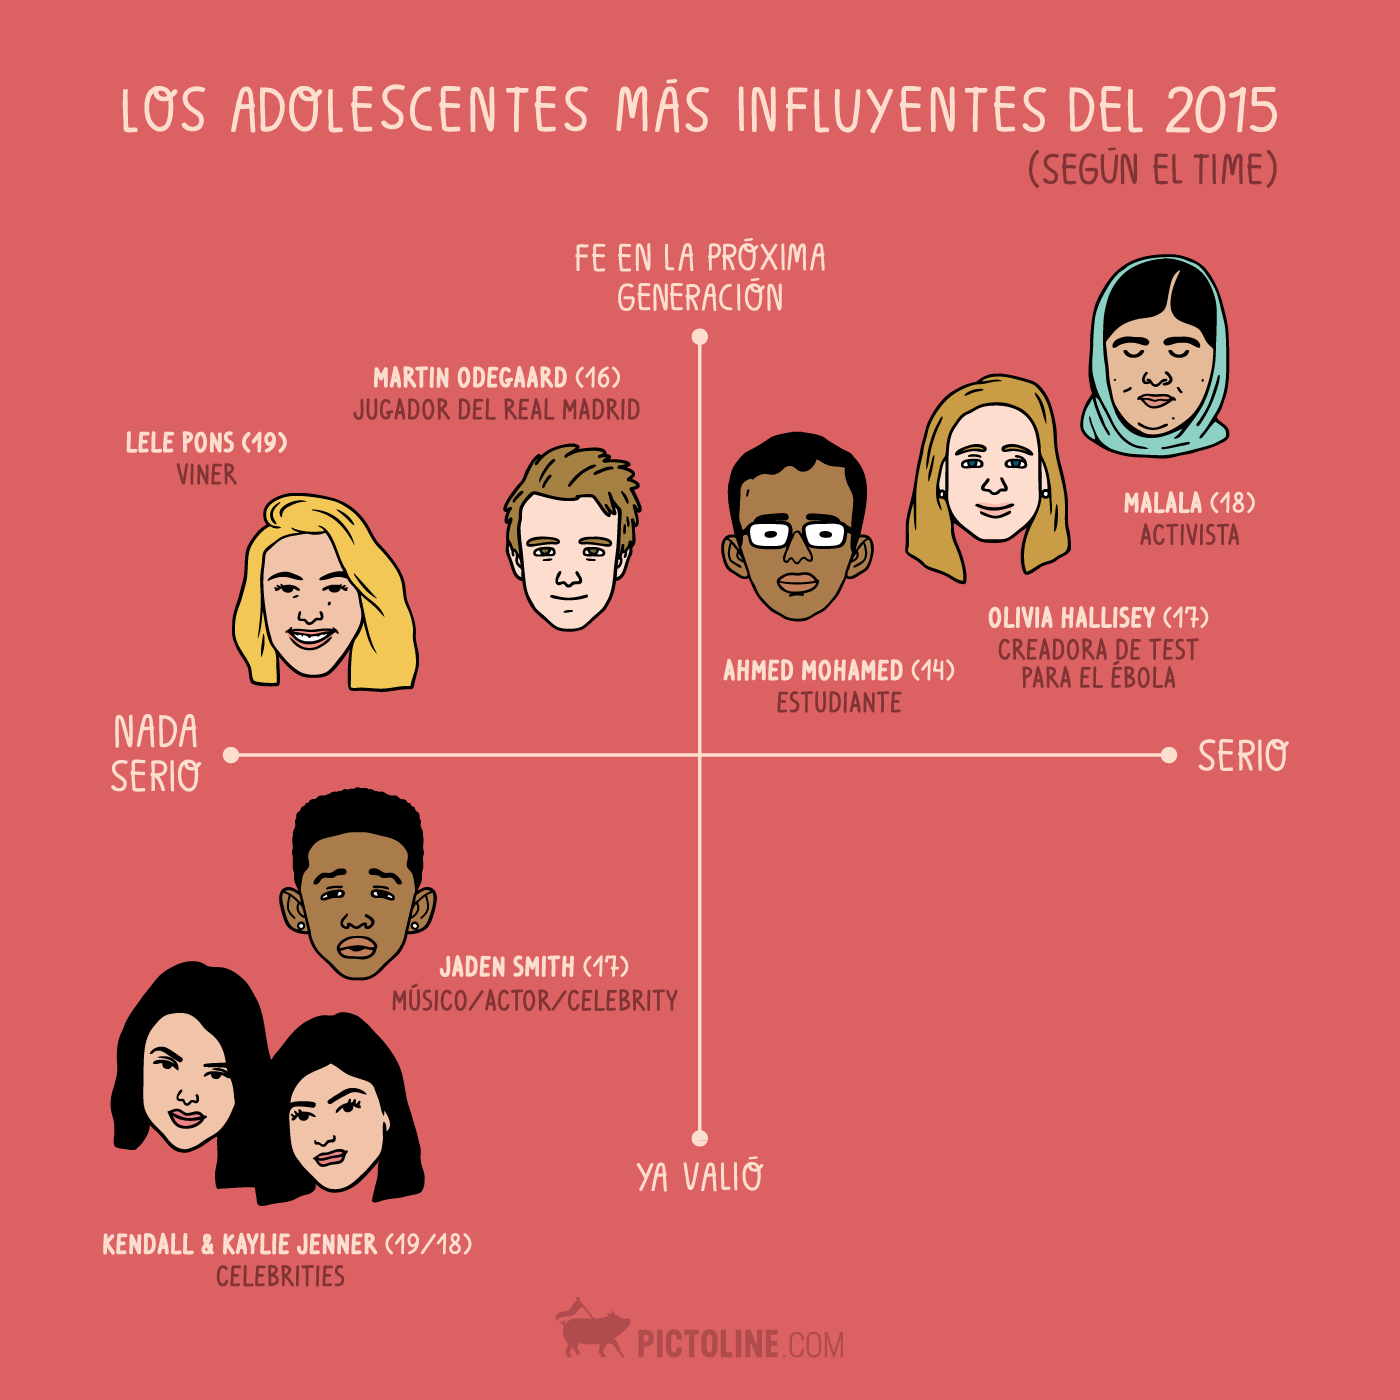 Los adolescentes más influyentes del 2015